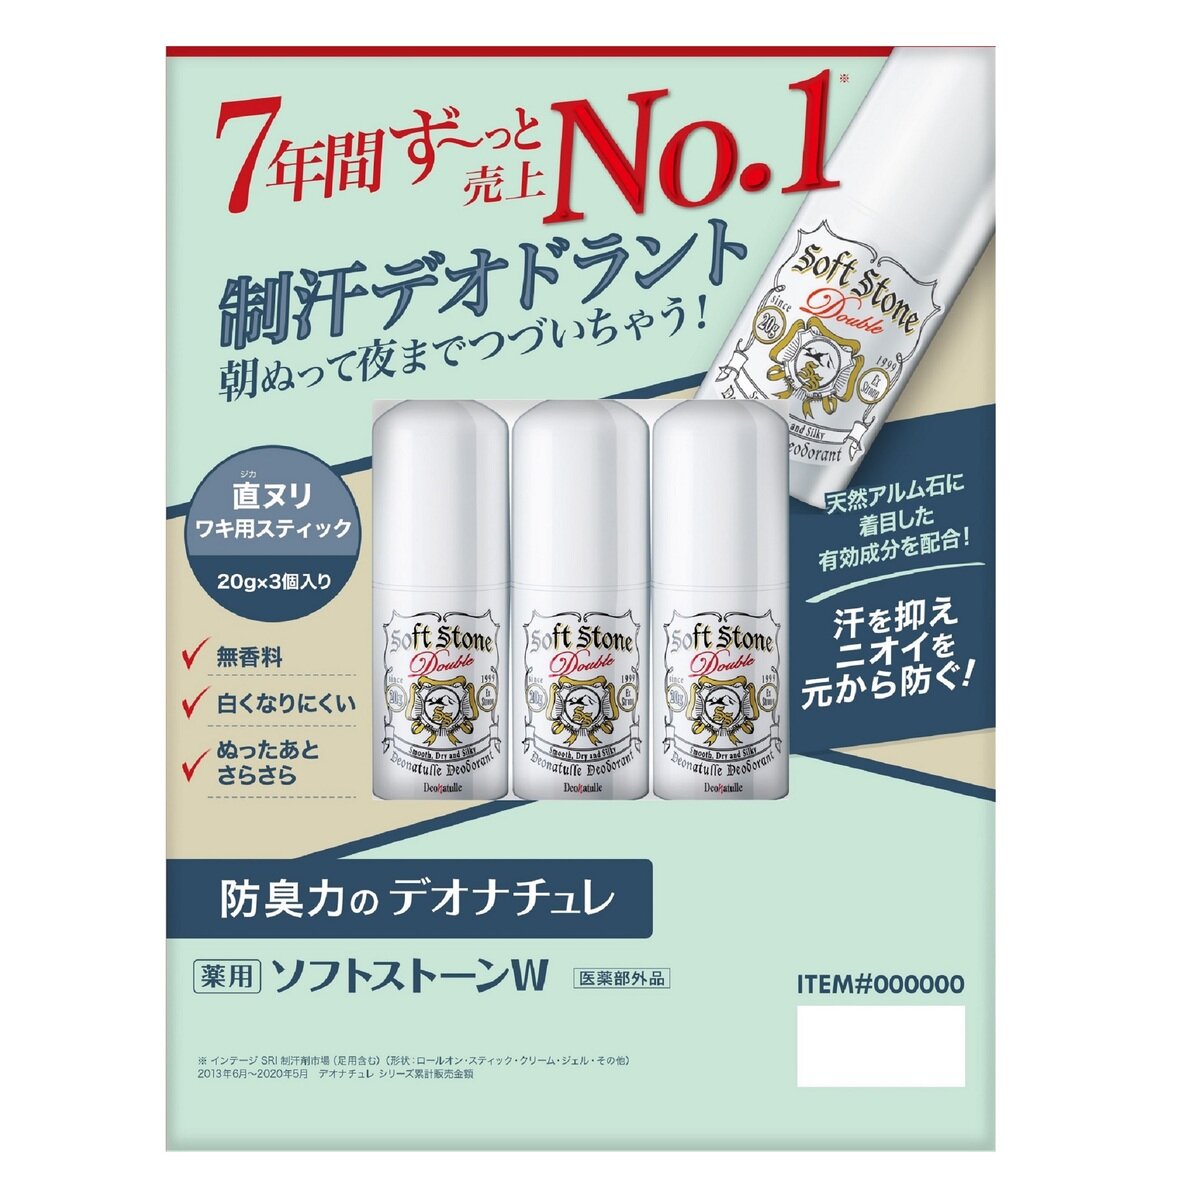 デオナチュレソフトストーンW ワキ用制汗剤 3個セット Costco Japan